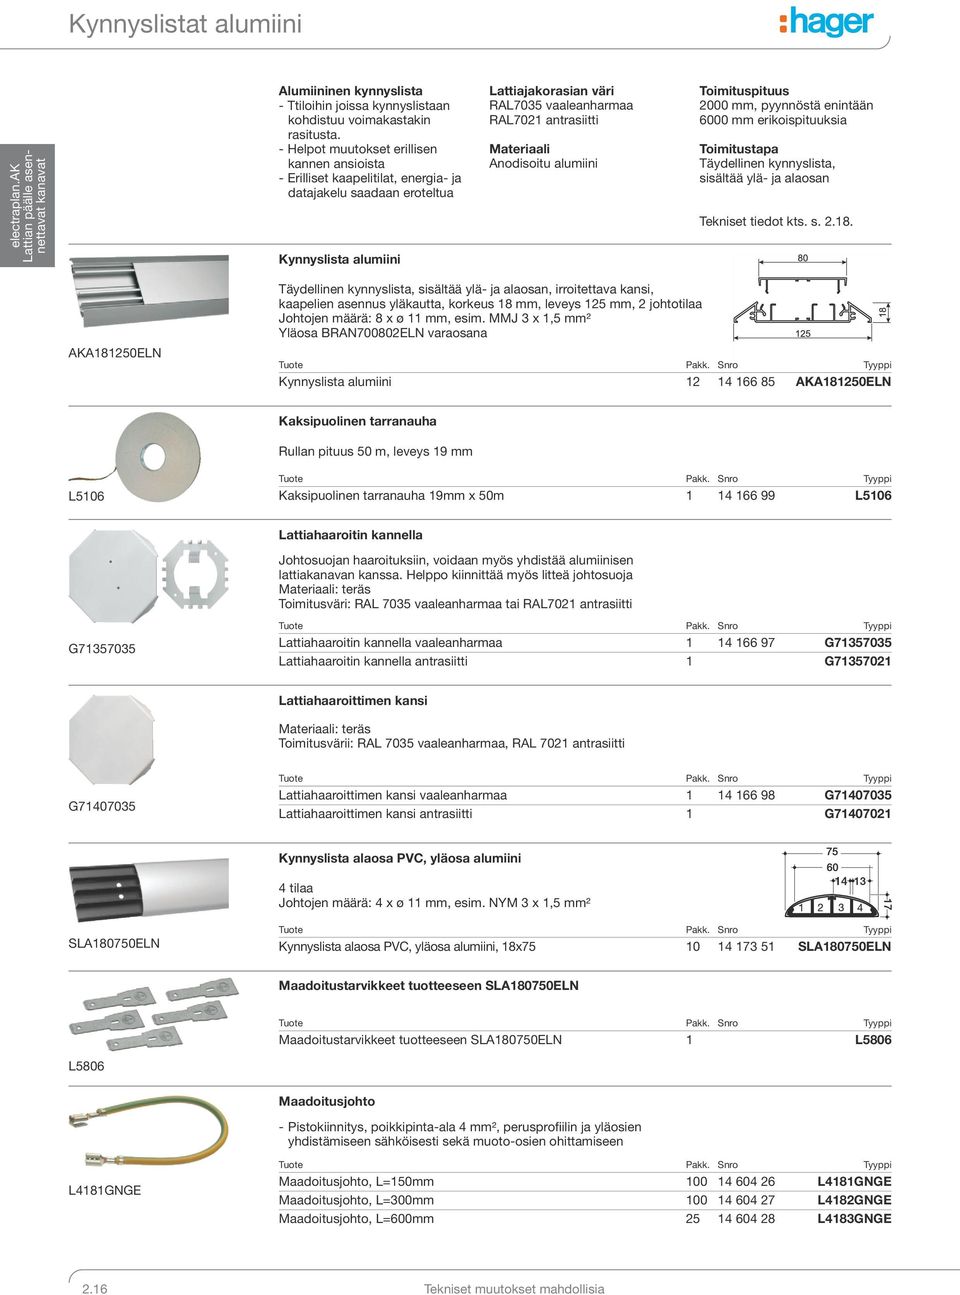 Materiaali Anodisoitu alumiini Toimituspituus 2000 mm, pyynnöstä enintään 6000 mm erikoispituuksia Toimitustapa Täydellinen kynnyslista, sisältää ylä- ja alaosan Tekniset tiedot kts. s. 2.18.